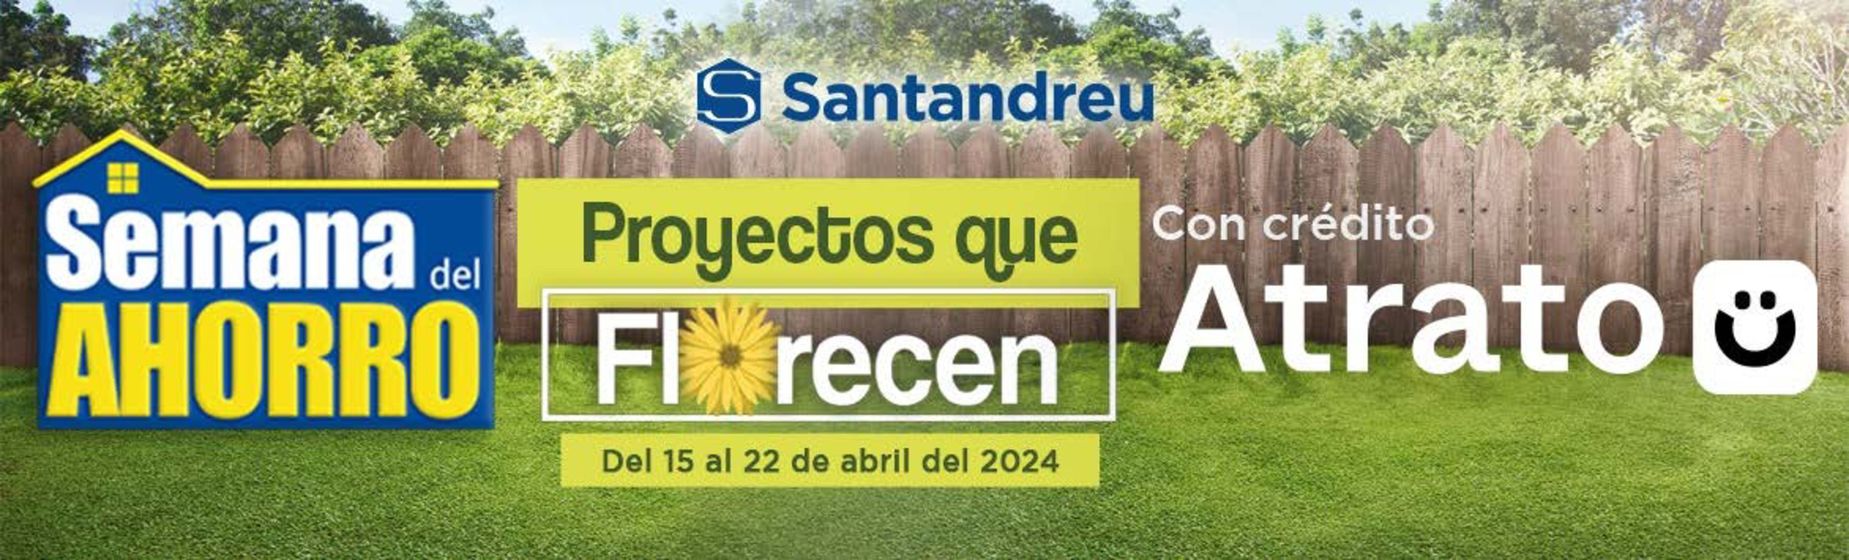 Catálogo Santandreu en San Francisco de Campeche | Semana del ahorro | 18/4/2024 - 22/4/2024